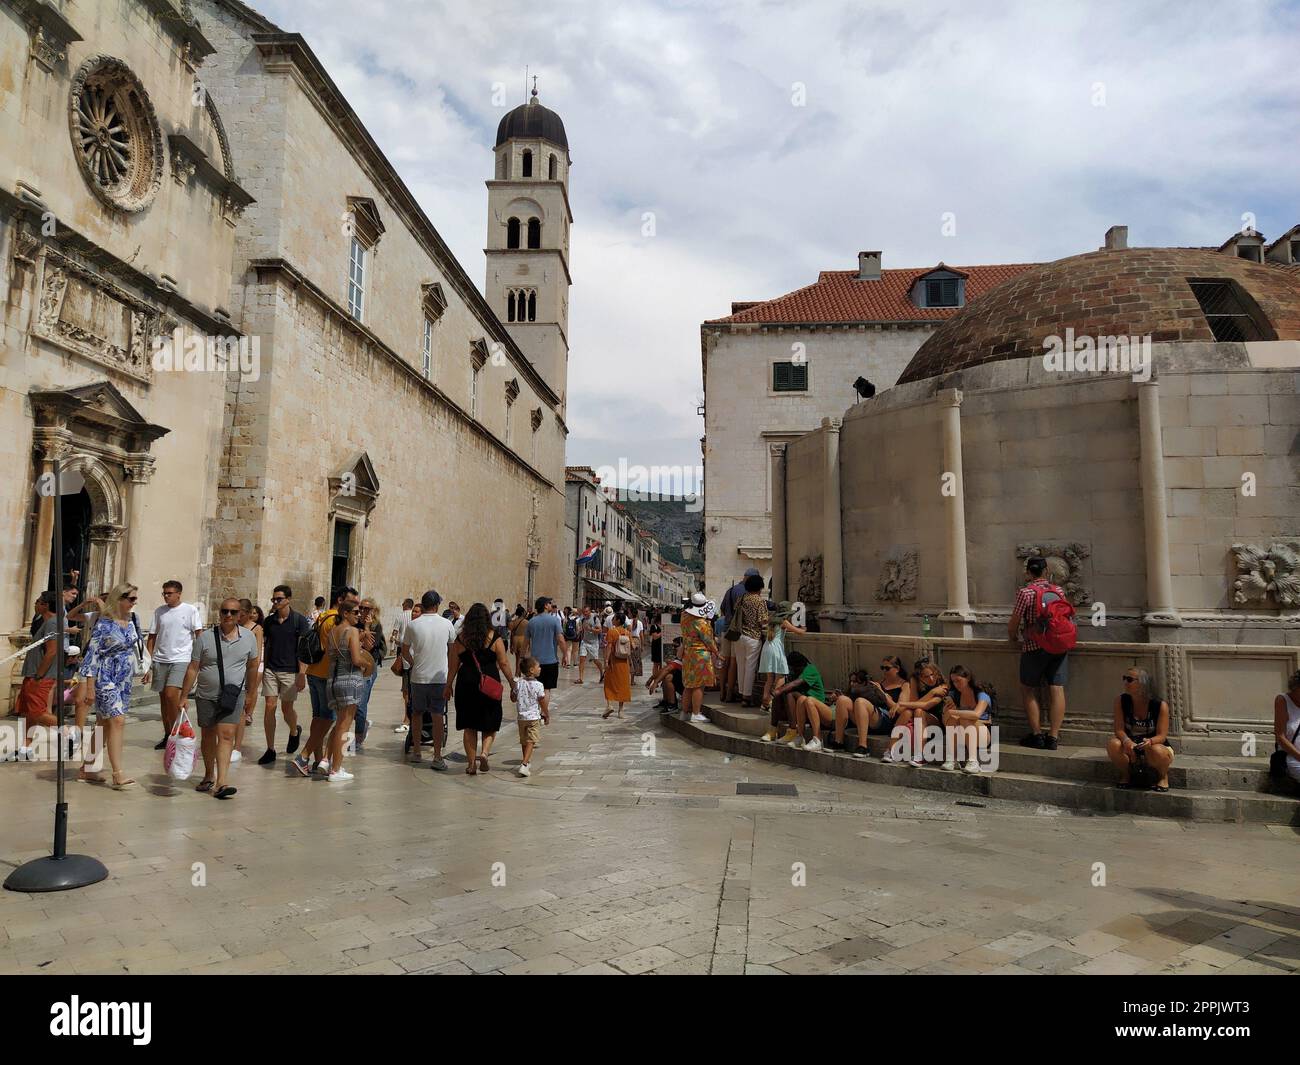 Grande Fontana di Onofrio, Velika Onofrijeva chesma, Dubrovnik, Croazia. Approvvigionamento idrico stabilito durante il Quattrocento. Numerosi turisti felici multinazionali camminano sullo Stradun il 14 agosto 2022 Foto Stock